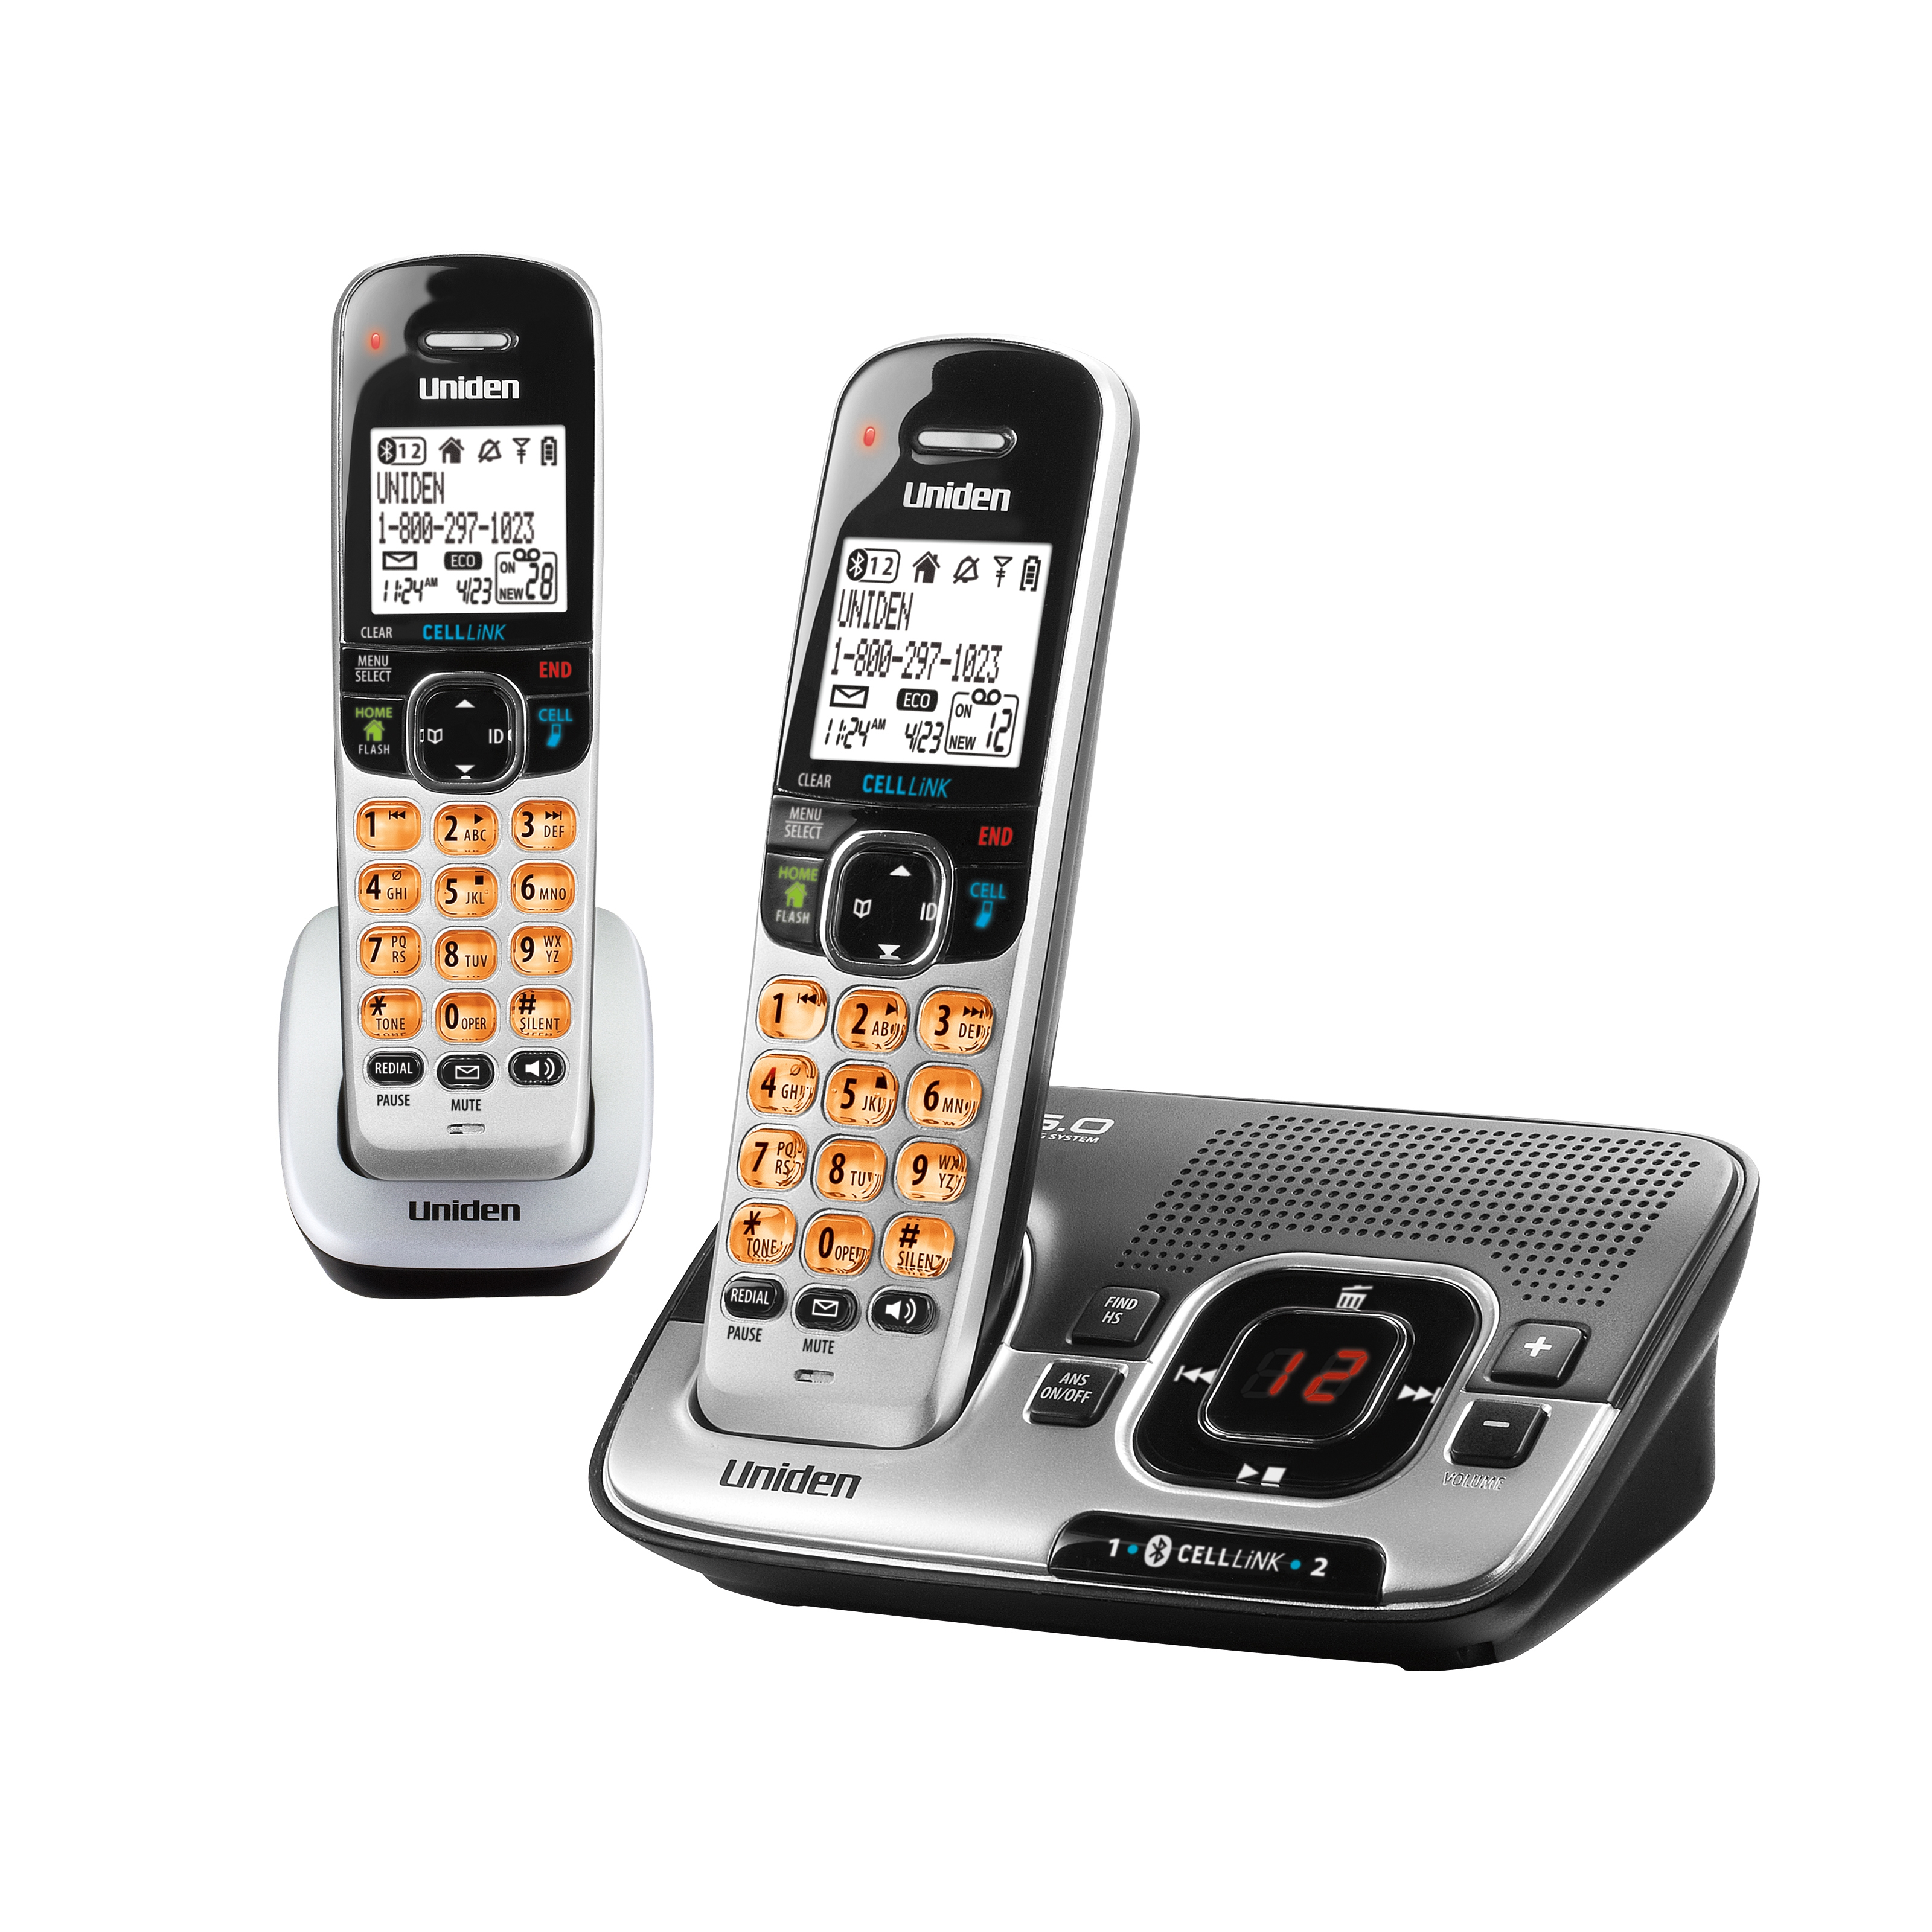 Uniden D1780-2BT DECT 6.0 1.90 GHz Cordless Phone, Black, Silver - image 2 of 2